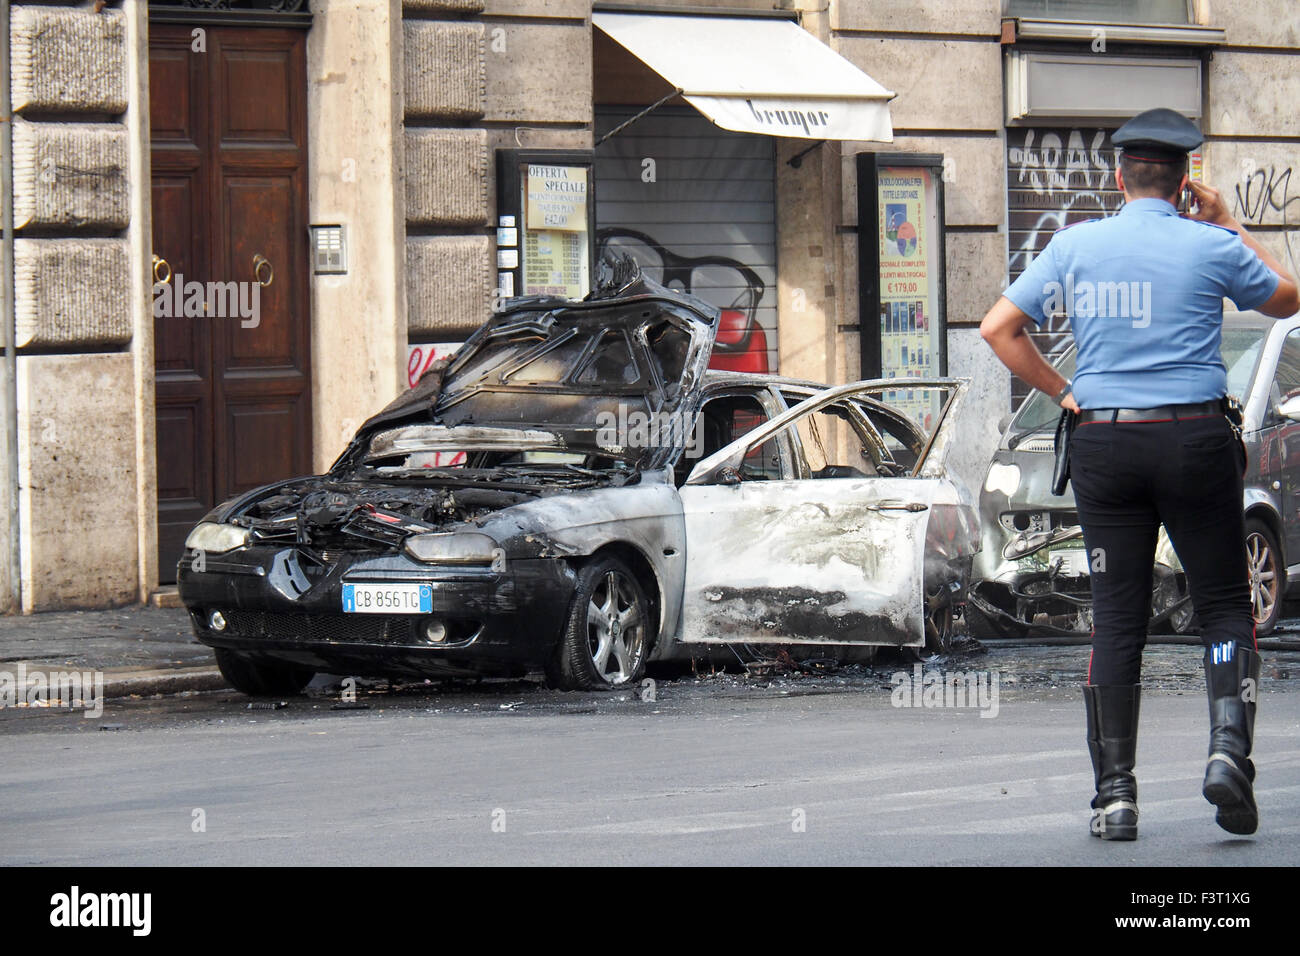 Un policier s'occupant d'une voiture brûlée dans une rue de Rome. Banque D'Images